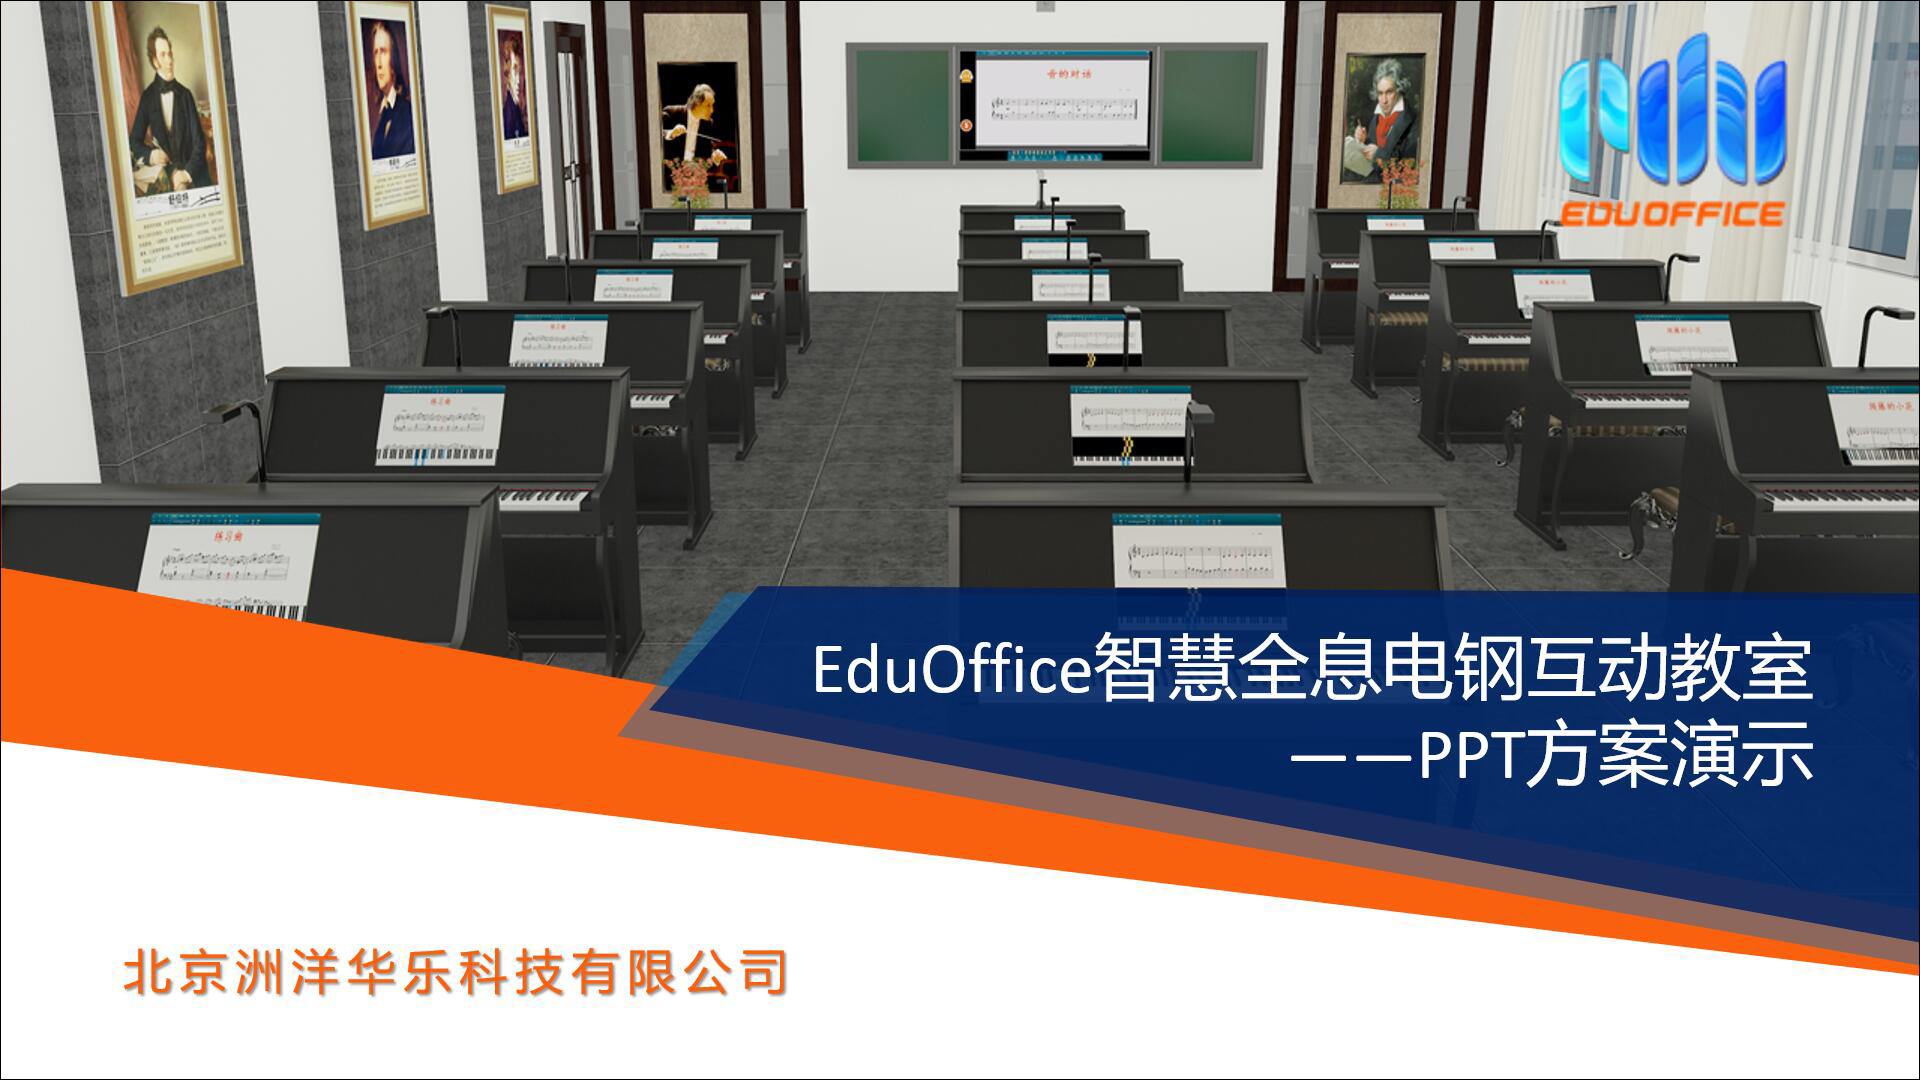 EduOffice智慧全息电钢互动教室-方案介绍